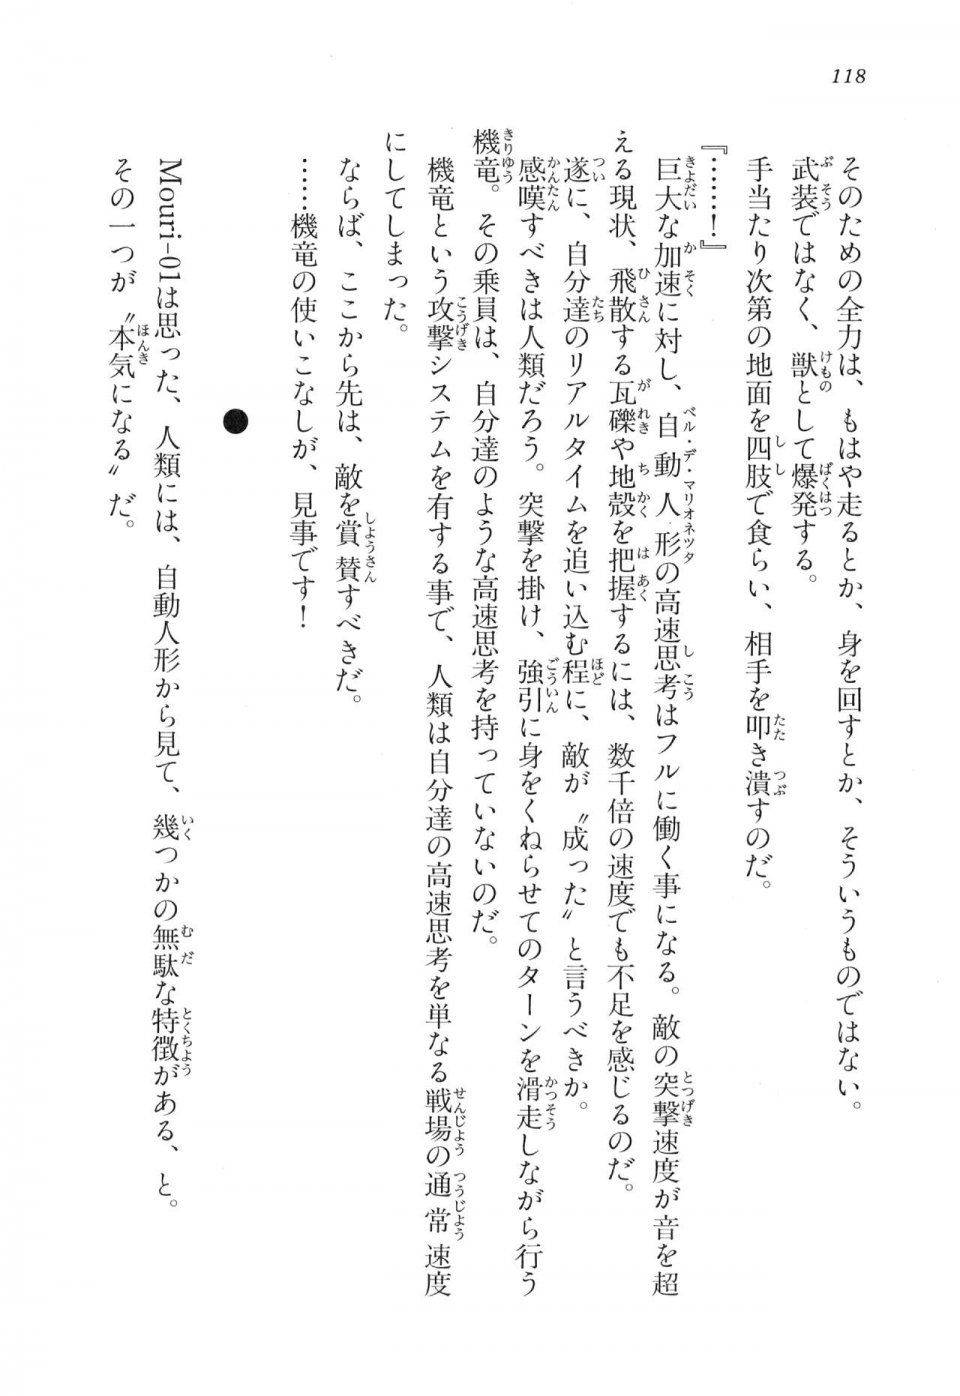 Kyoukai Senjou no Horizon LN Vol 17(7B) - Photo #118